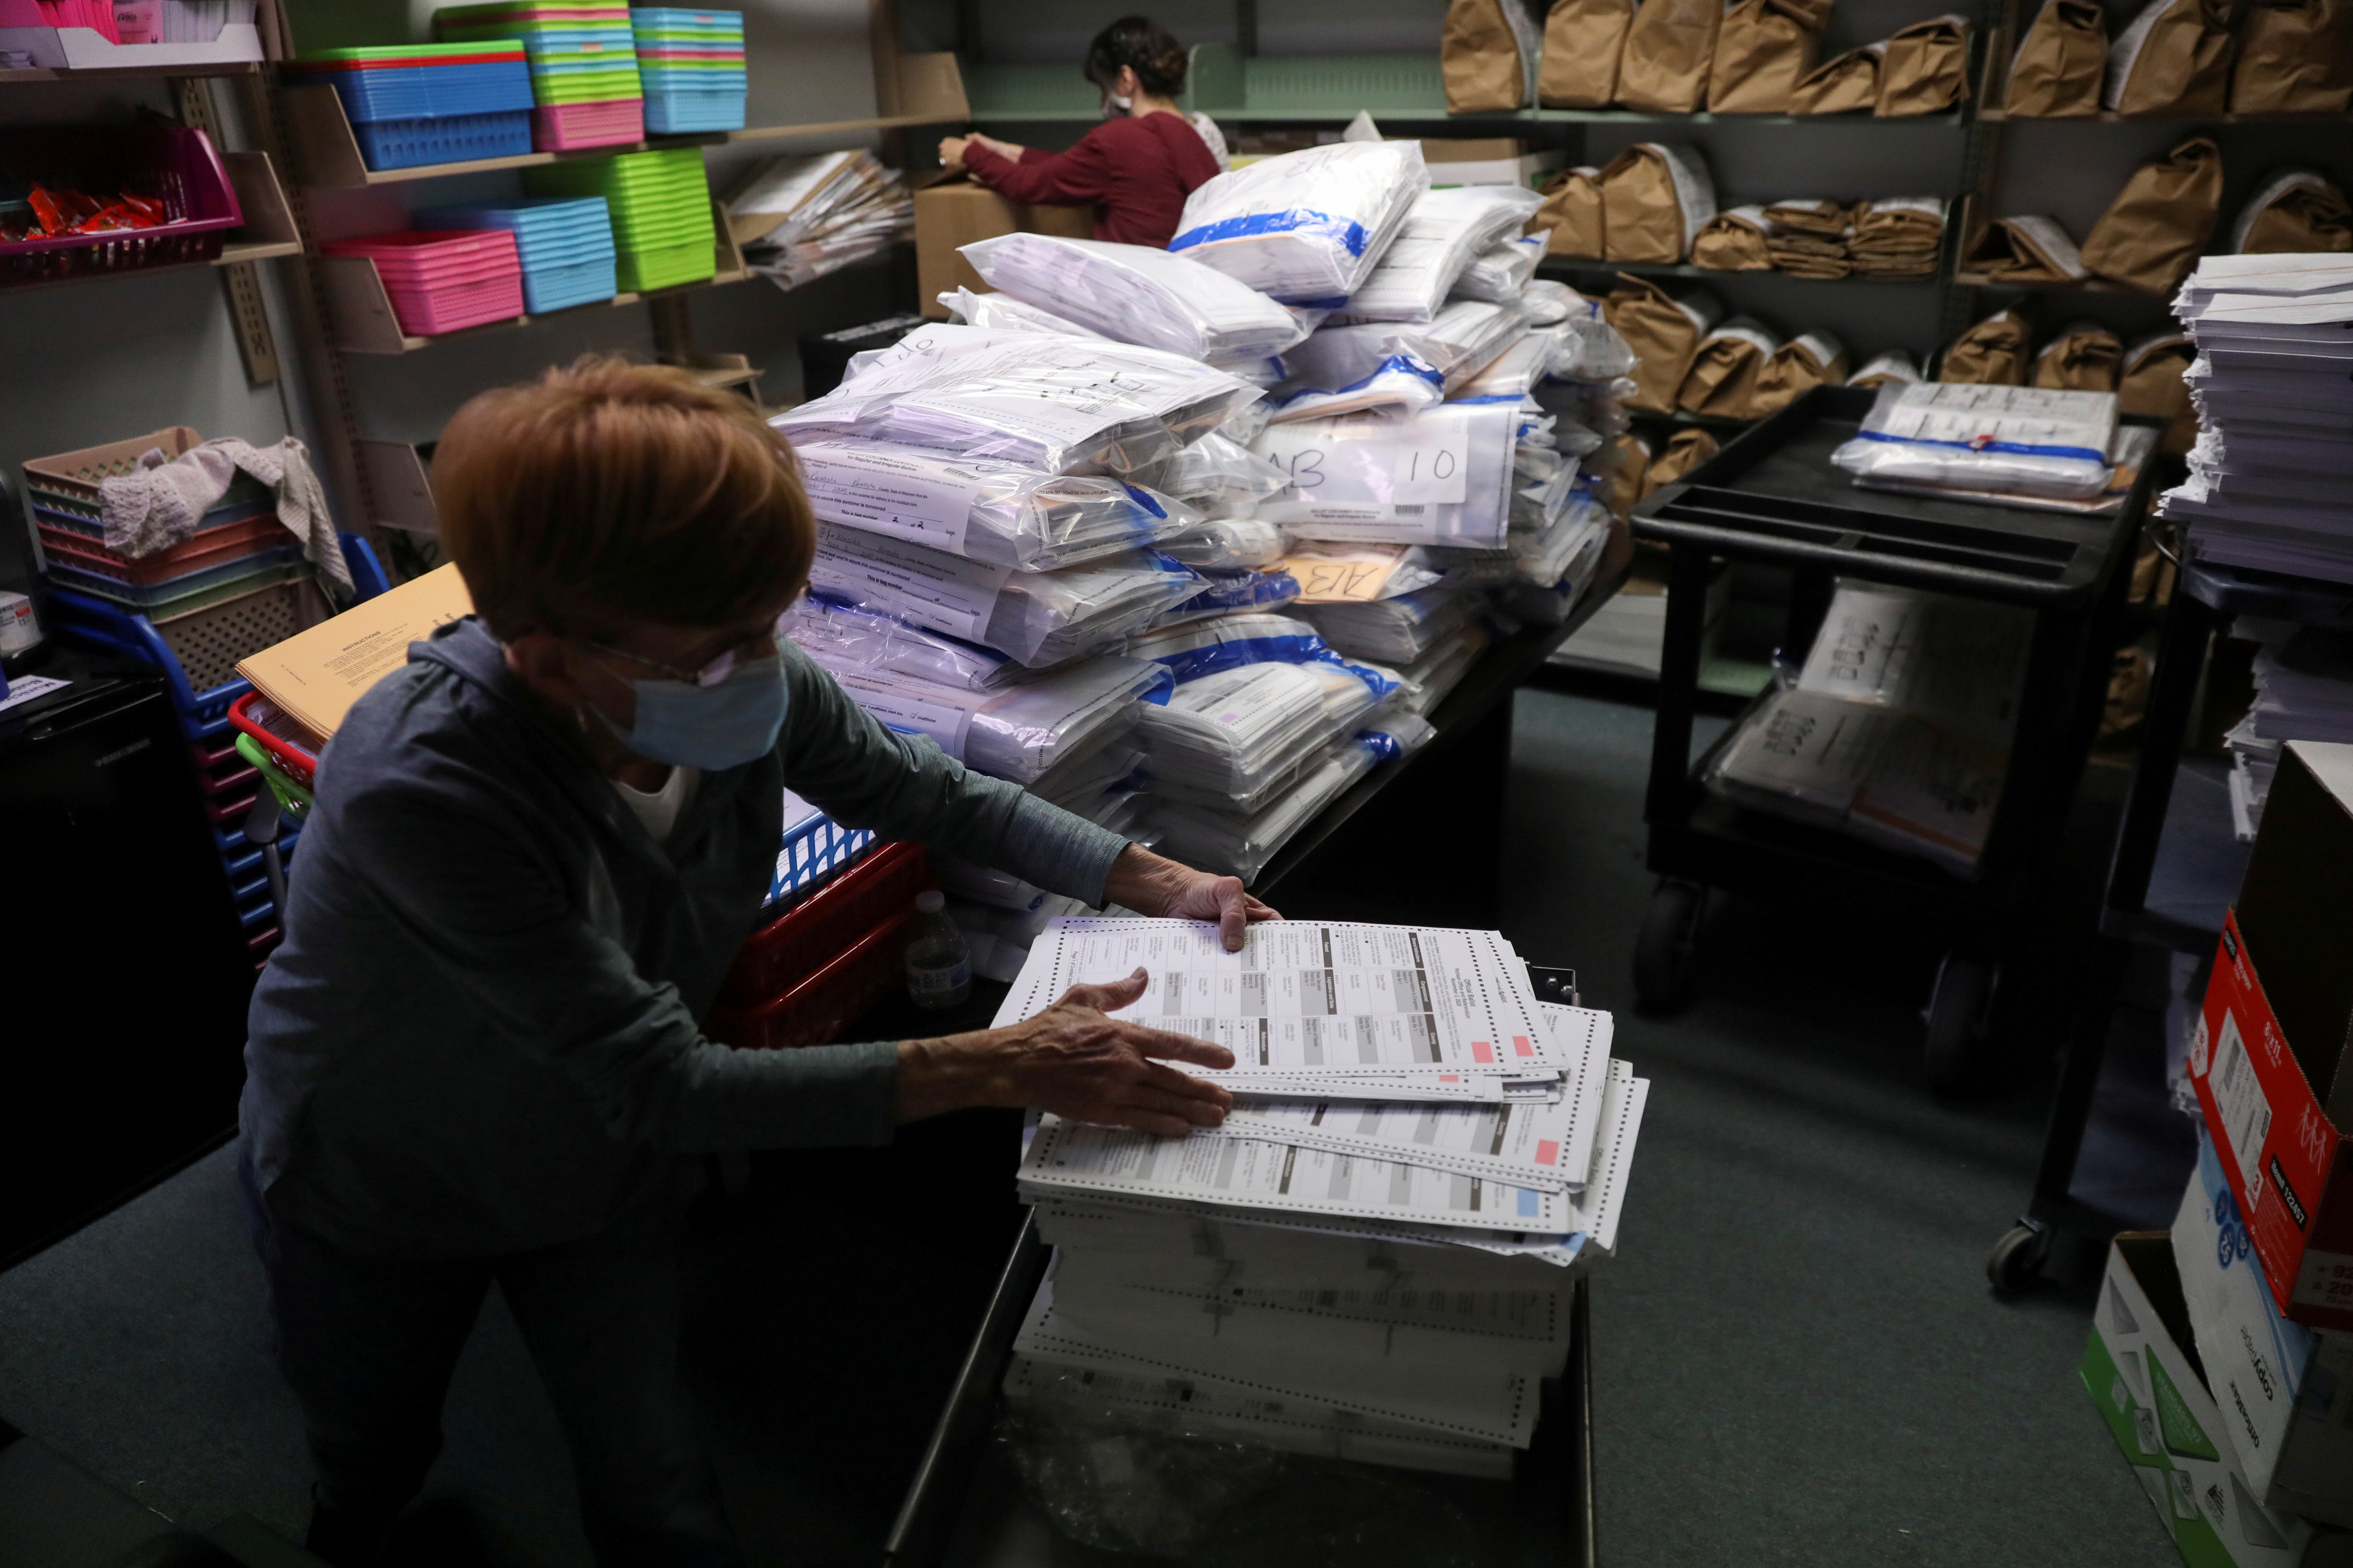 La funcionaria electoral Pam Hainault trabaja en la sala de votación organizando las boletas no utilizadas devueltas de los distritos electorales después del día de las elecciones en el edificio municipal de Kenosha en Kenosha, Wisconsin. REUTERS/Daniel Acker/File Photo